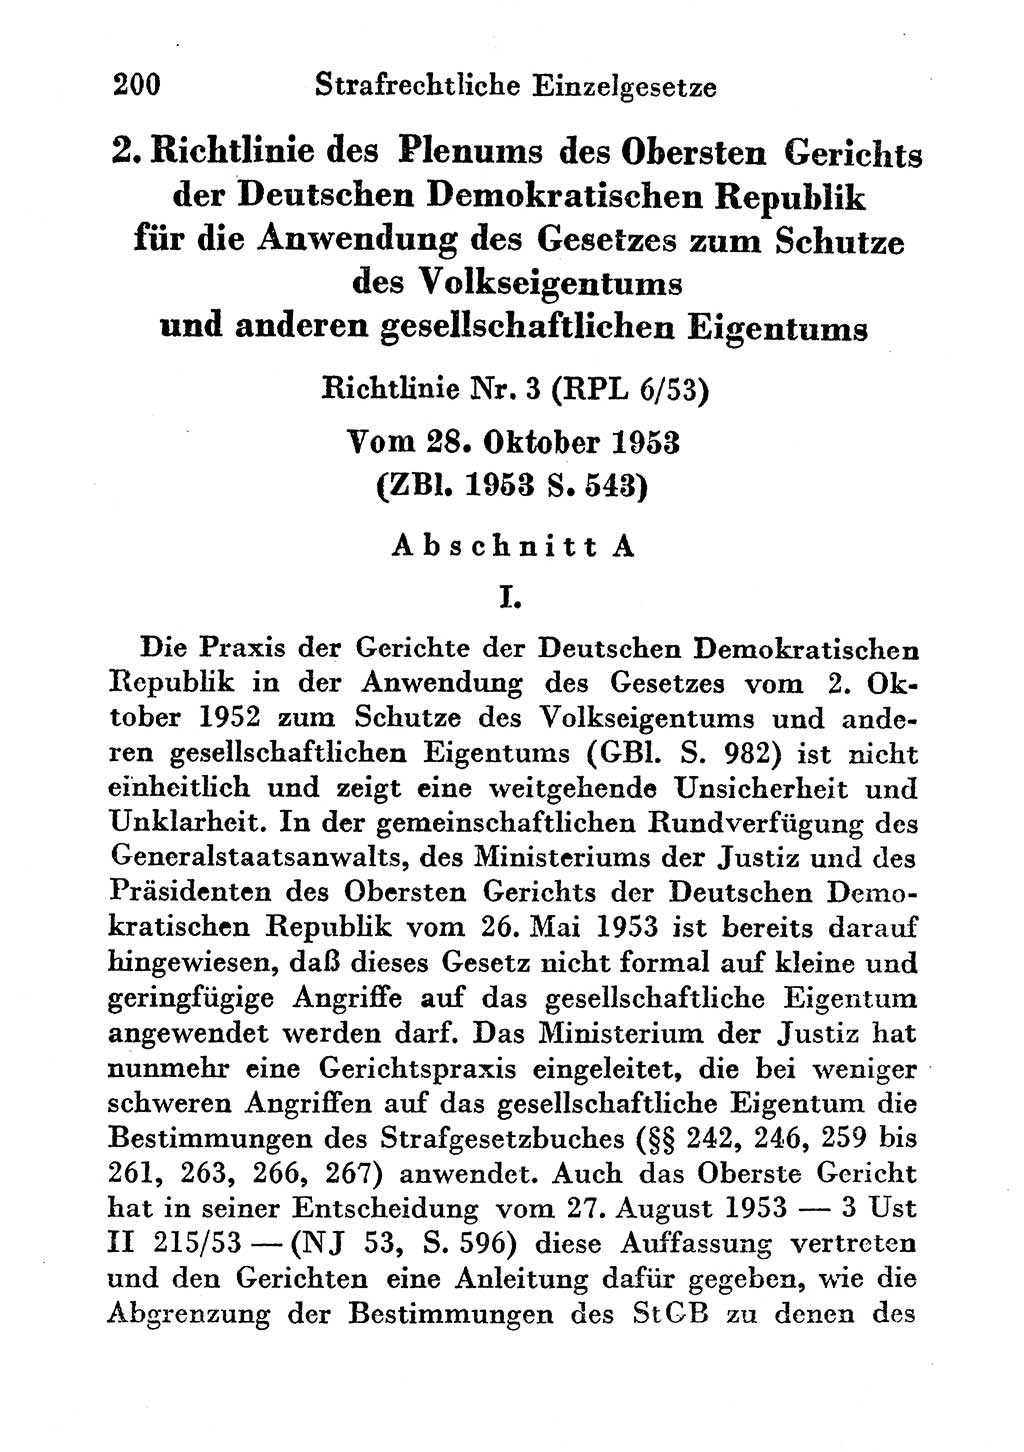 Strafgesetzbuch (StGB) und andere Strafgesetze [Deutsche Demokratische Republik (DDR)] 1956, Seite 200 (StGB Strafges. DDR 1956, S. 200)